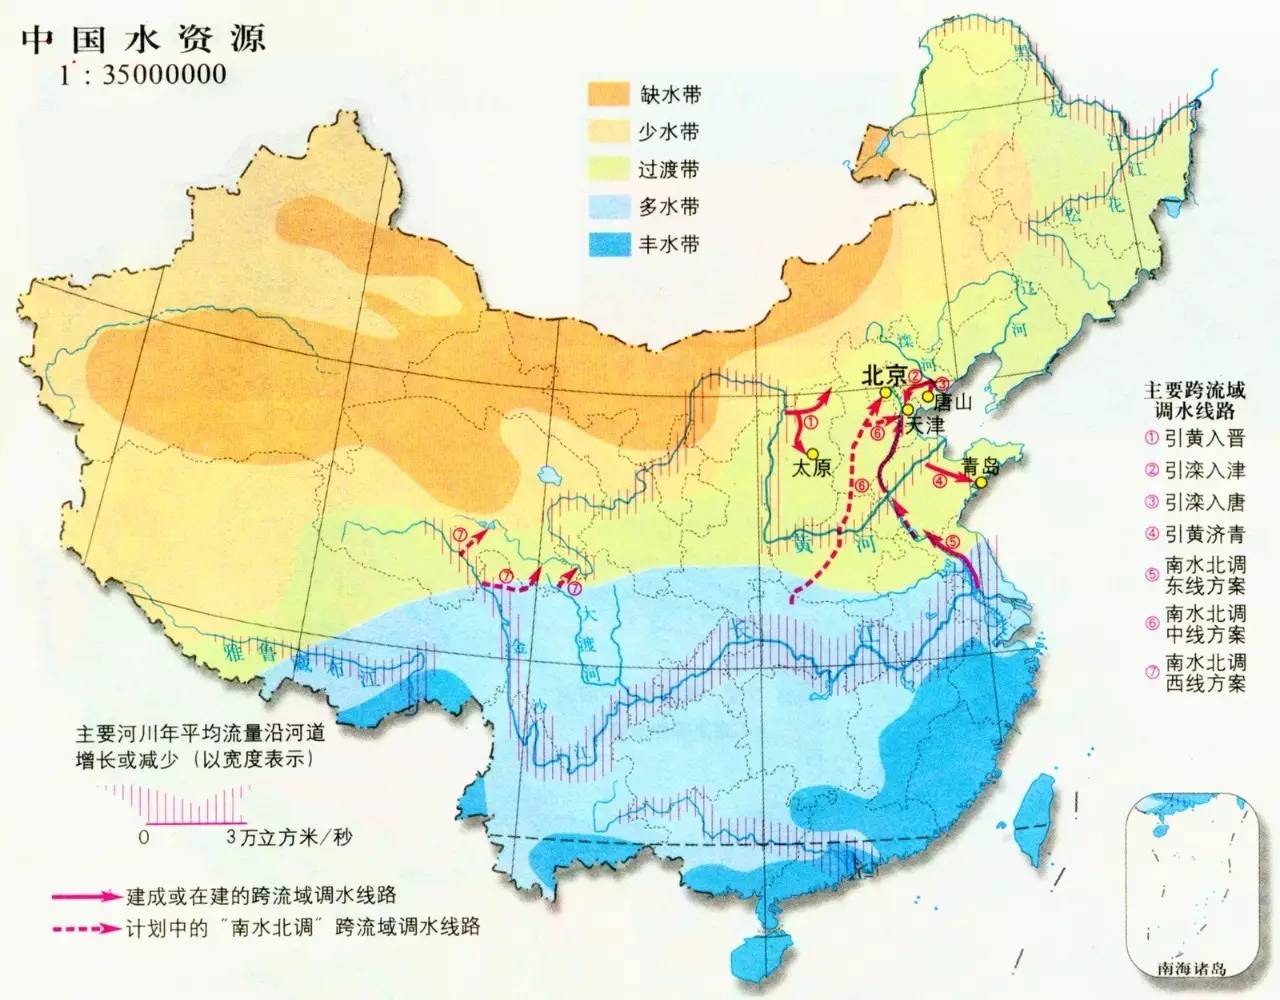 【转载】2016年中国水资源公报发布(附全文)